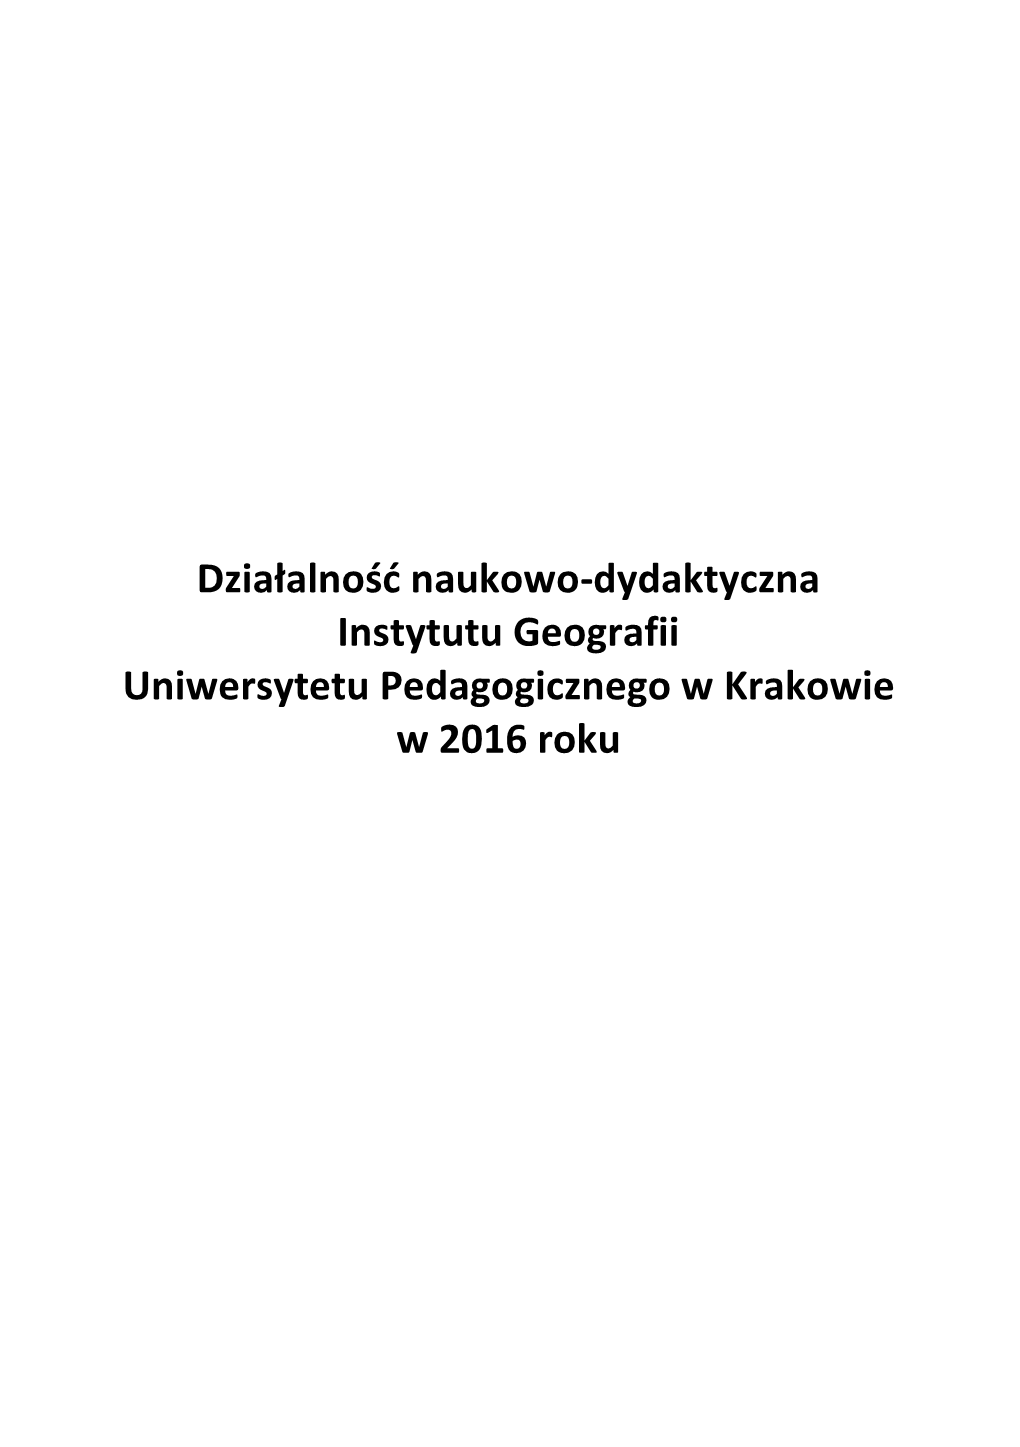 Działalność Naukowo-Dydaktyczna Instytutu Geografii Uniwersytetu Pedagogicznego W Krakowie W 2016 Roku